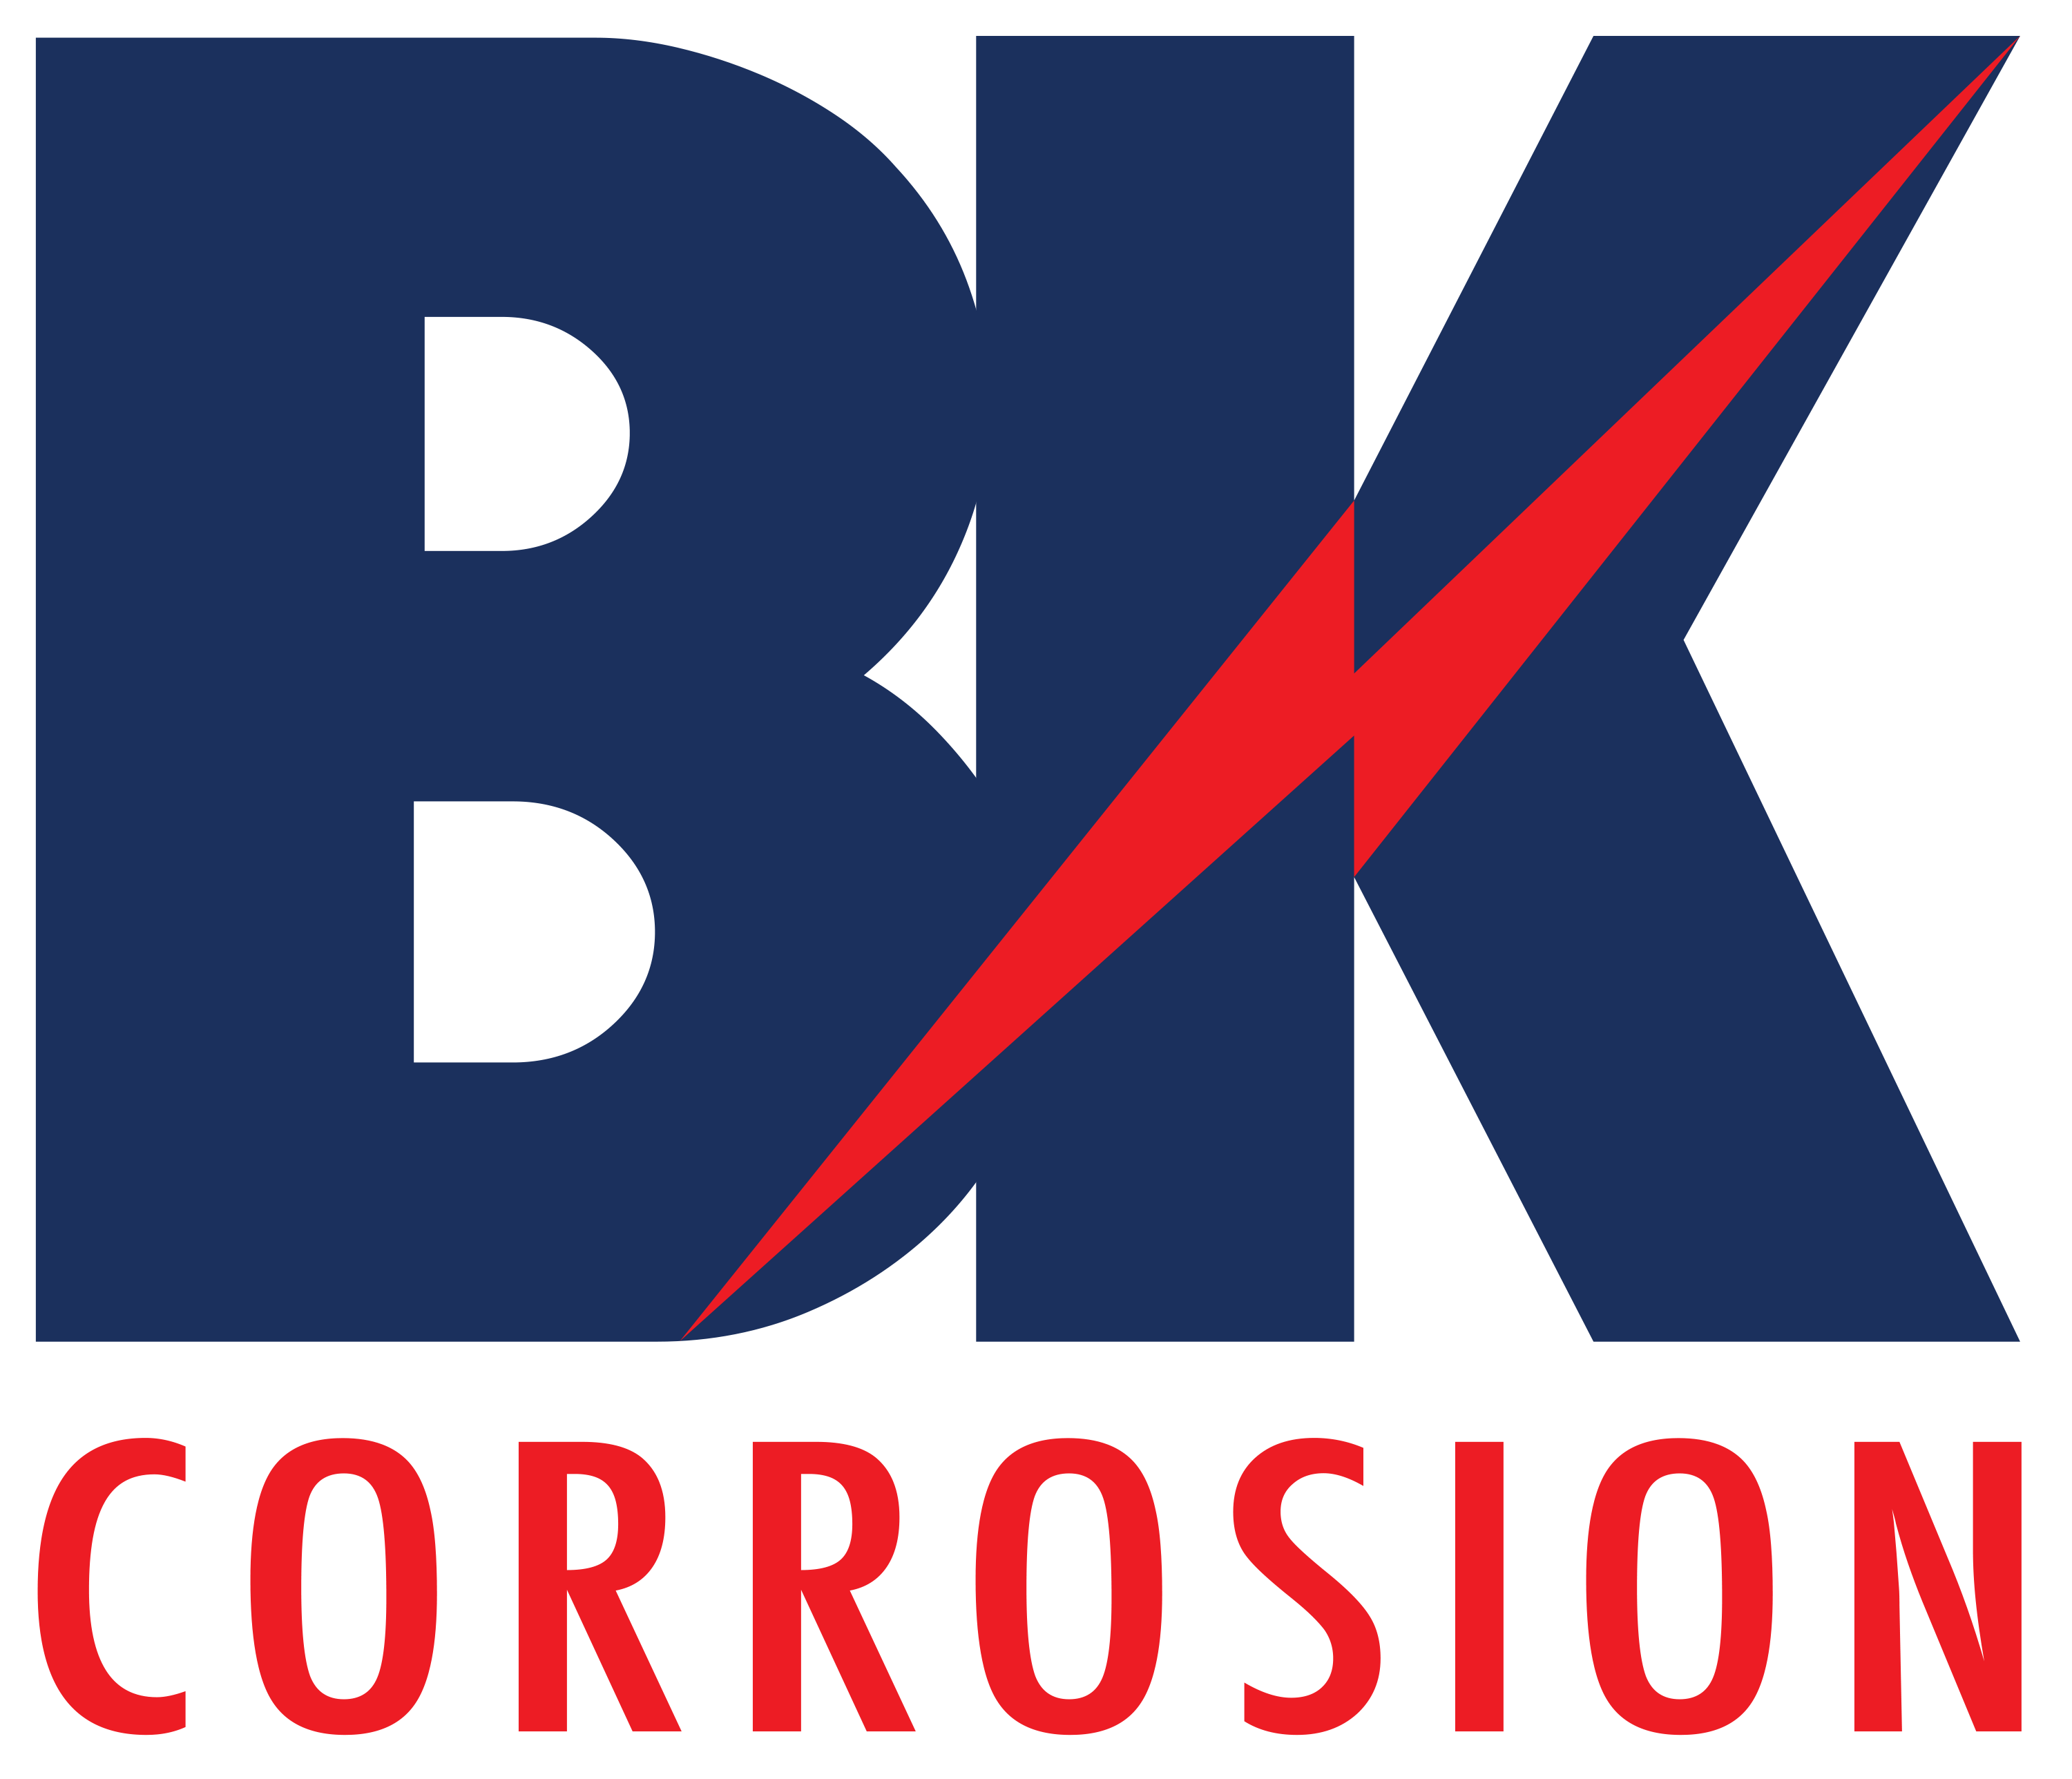 BK Corrosion - WSCS Premier Sponsor